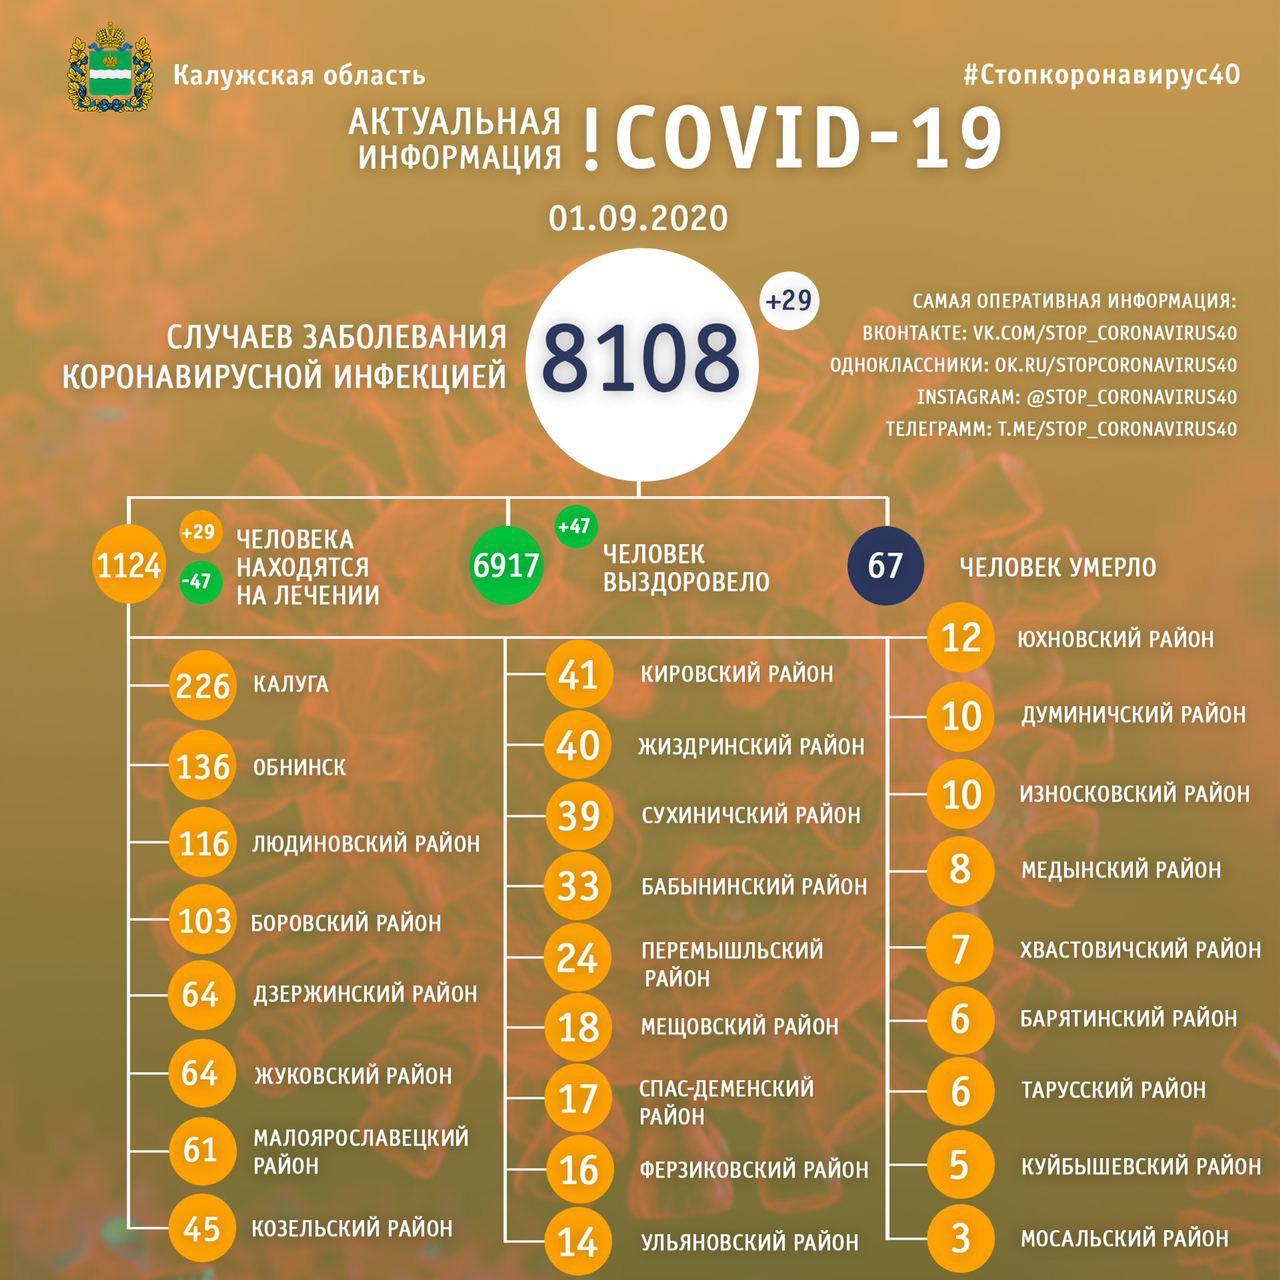 Официальная статистика по коронавирусу в Калужской области на 1 сентября 2020 года.